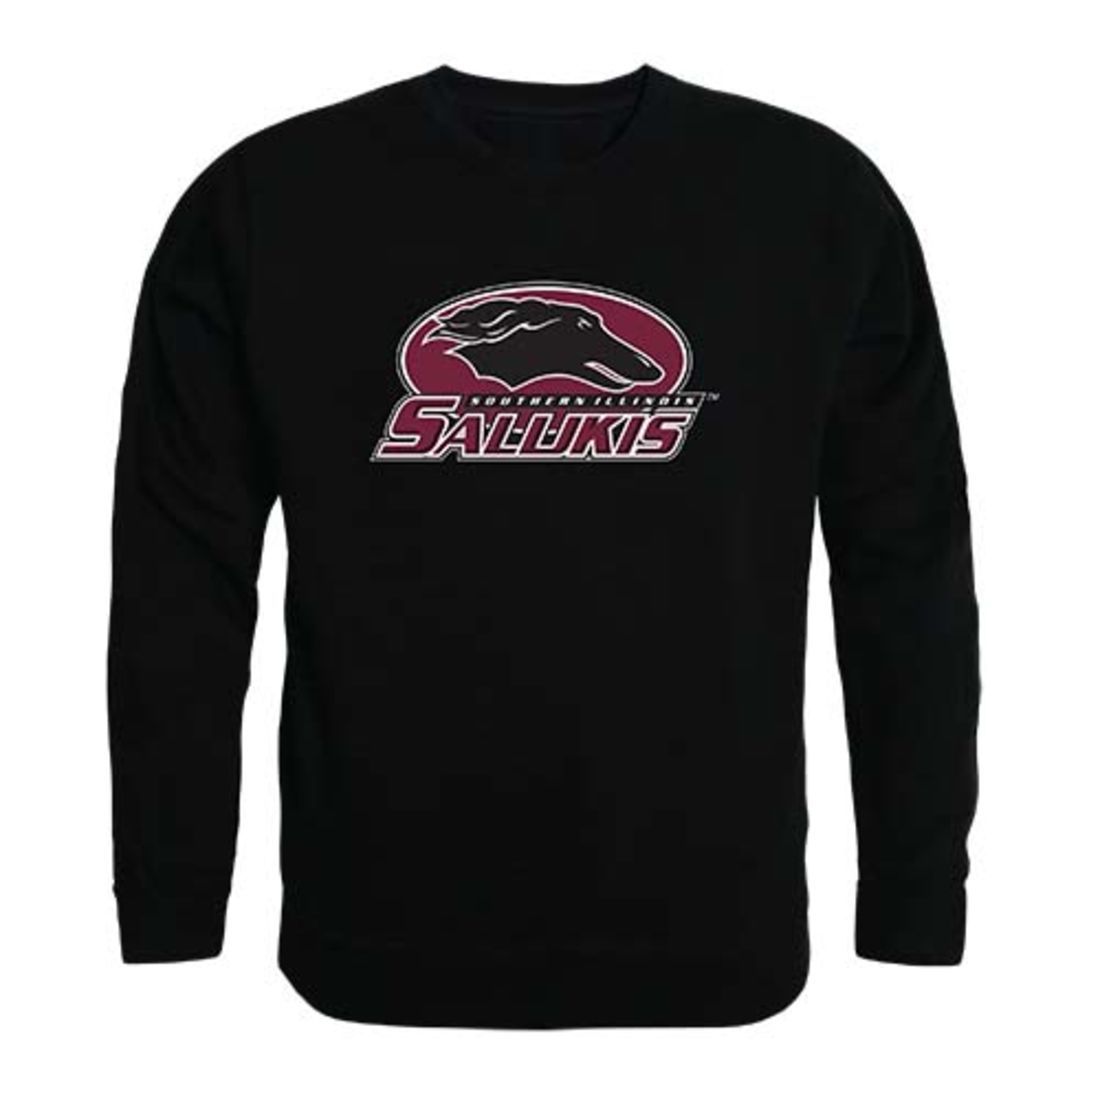 Santa Clara University Broncos Crewneck Pullover Sweatshirt Sweater Black-Campus-Wardrobe